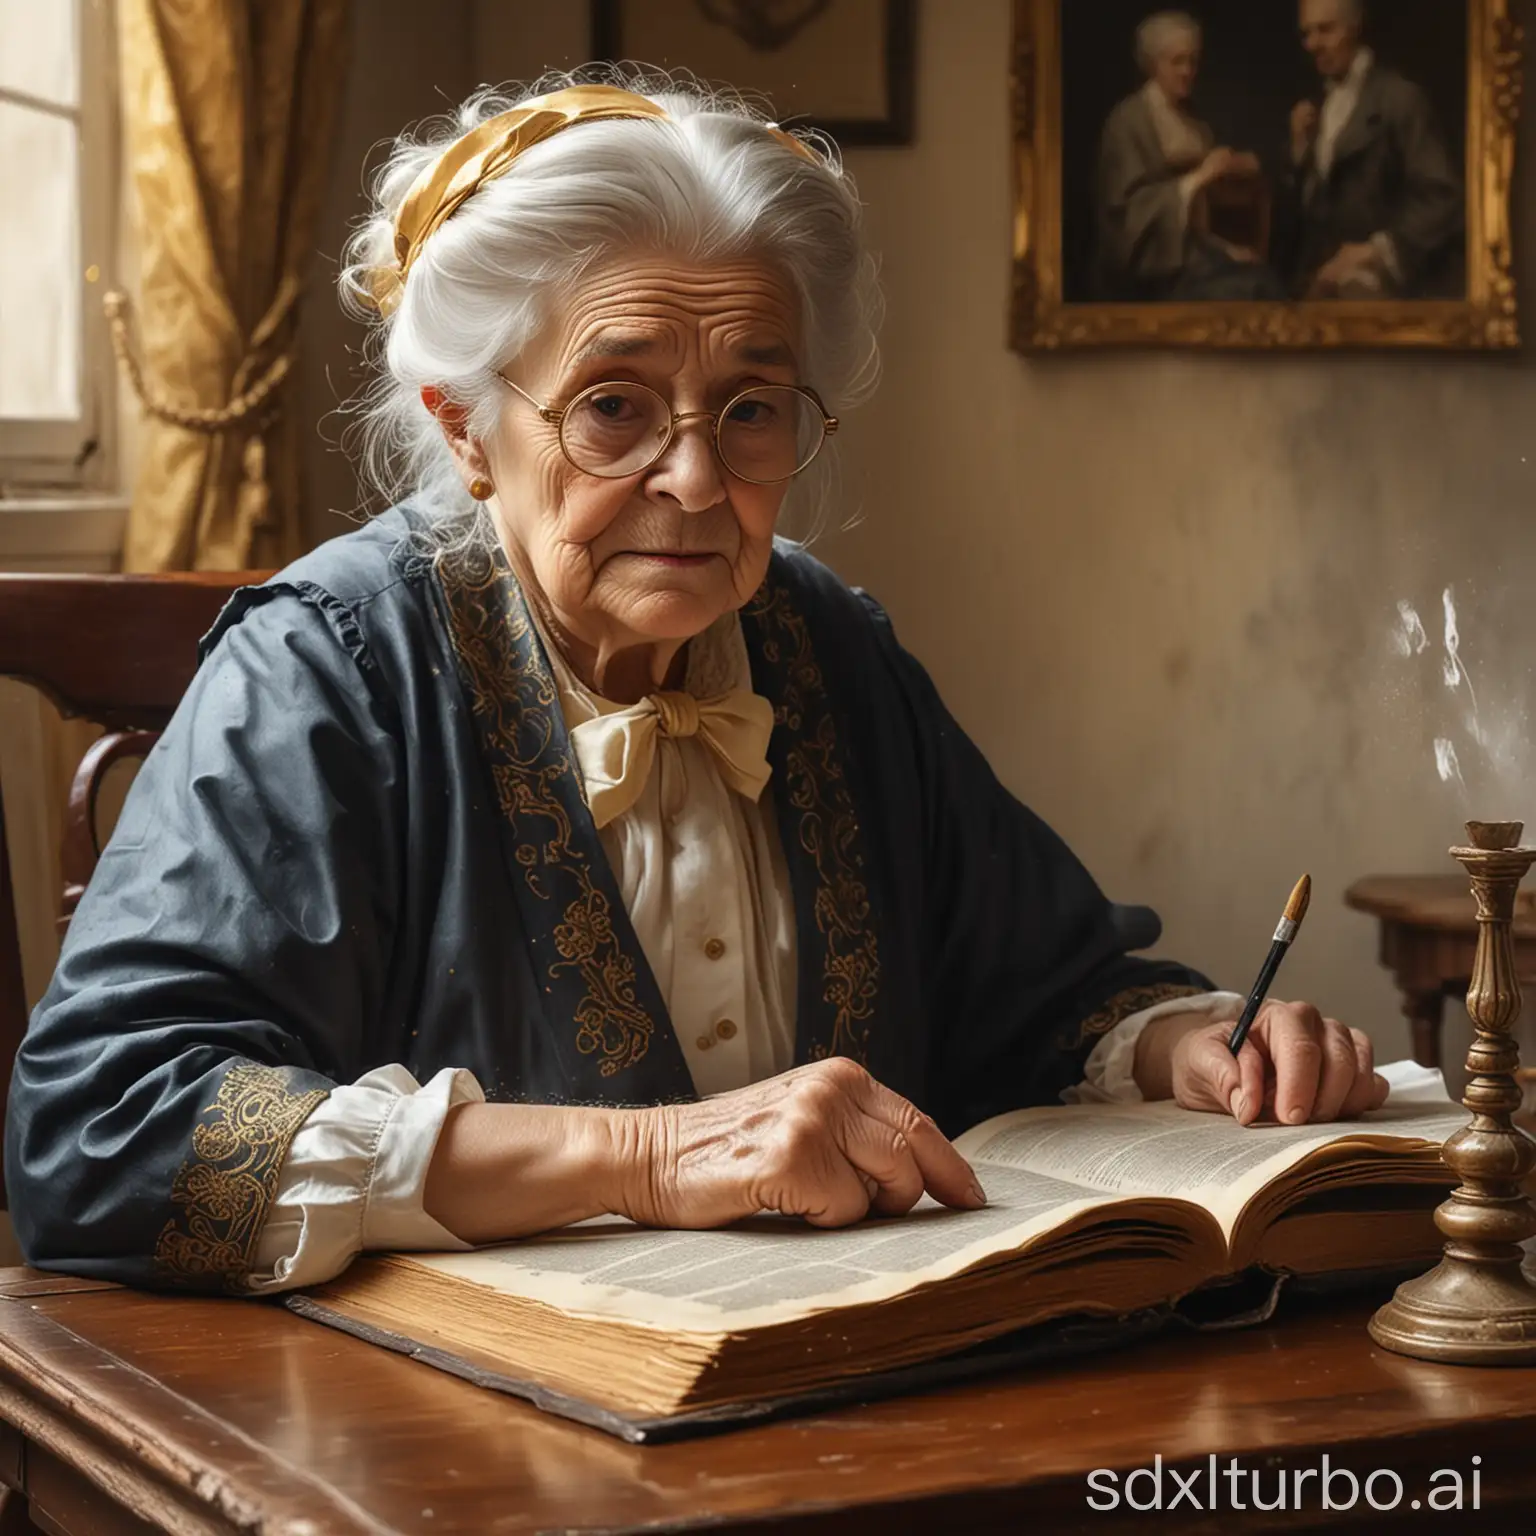 水墨画背景，民国时期的小老太太，坐在书桌前，手翻着本厚厚的书，戴金丝眼镜，佝偻着腰，电影质感，高清图